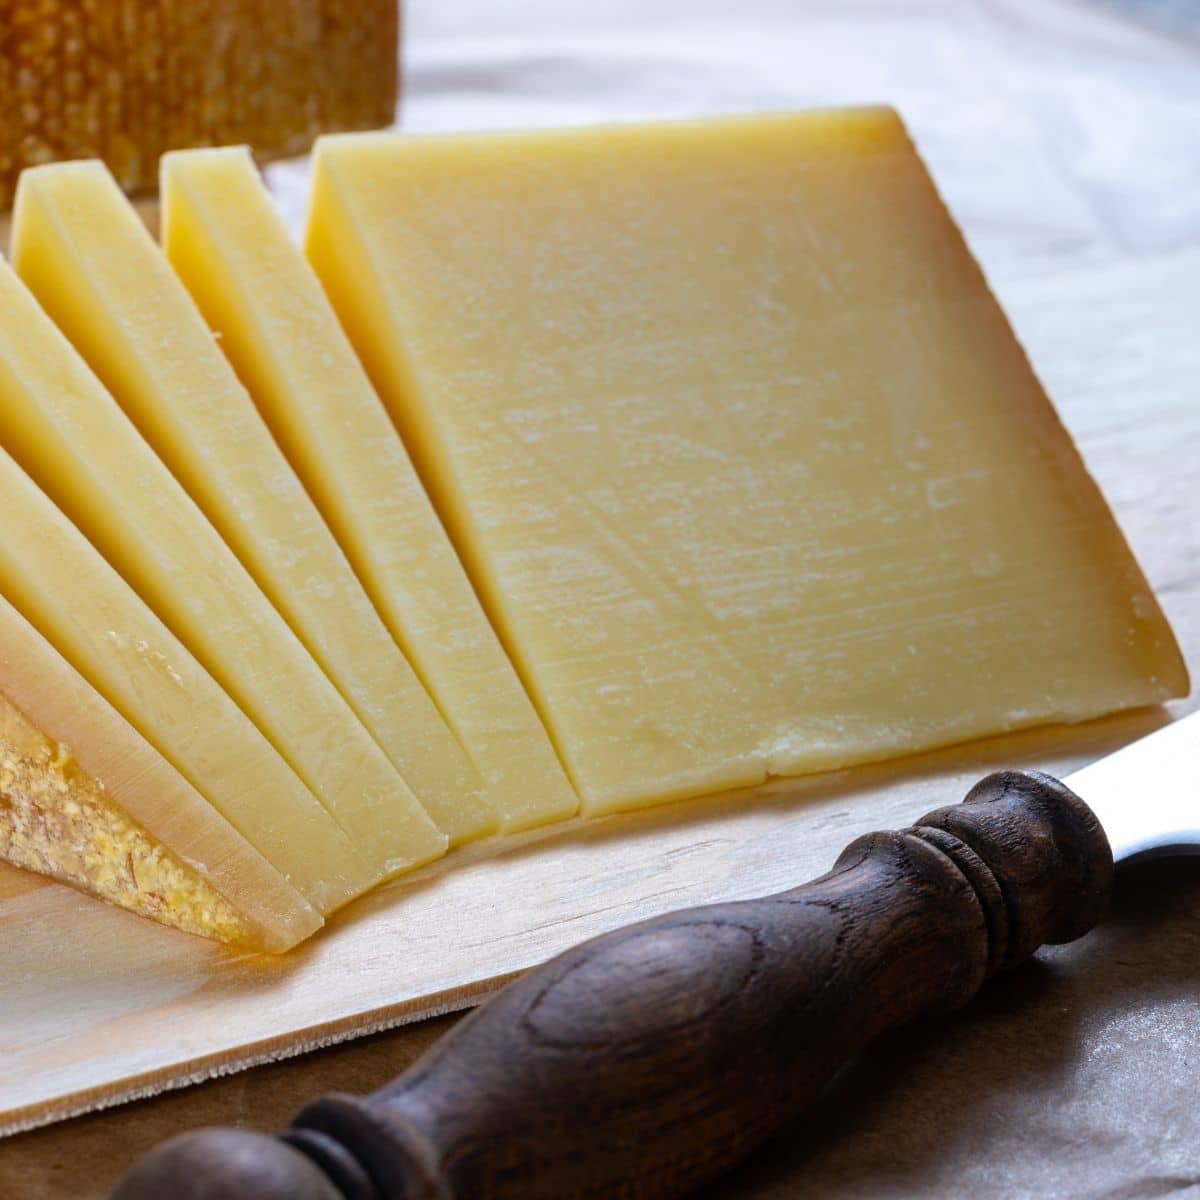 Najbolje opcije zamjene za gruyere sir sa slikom svježe narezanog gruyerea.